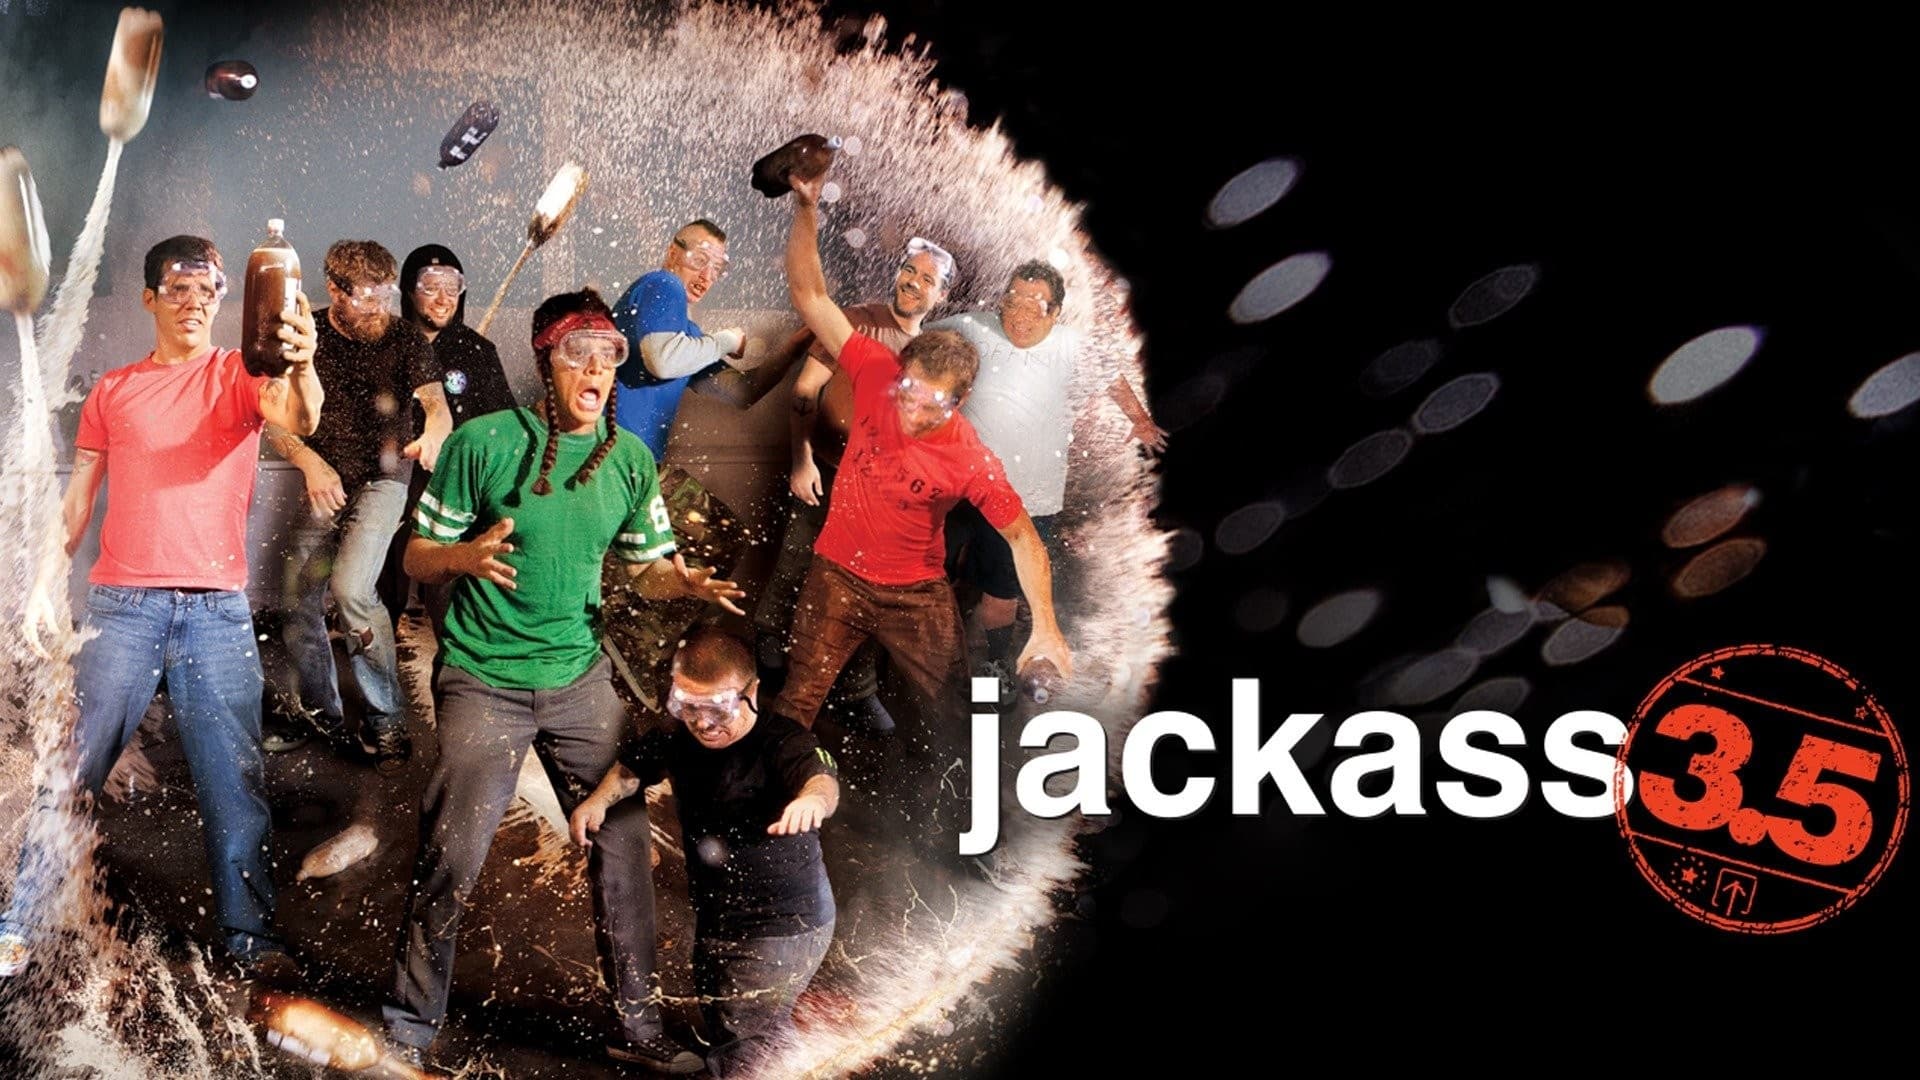 Jackass wersja 3.5 (2011)